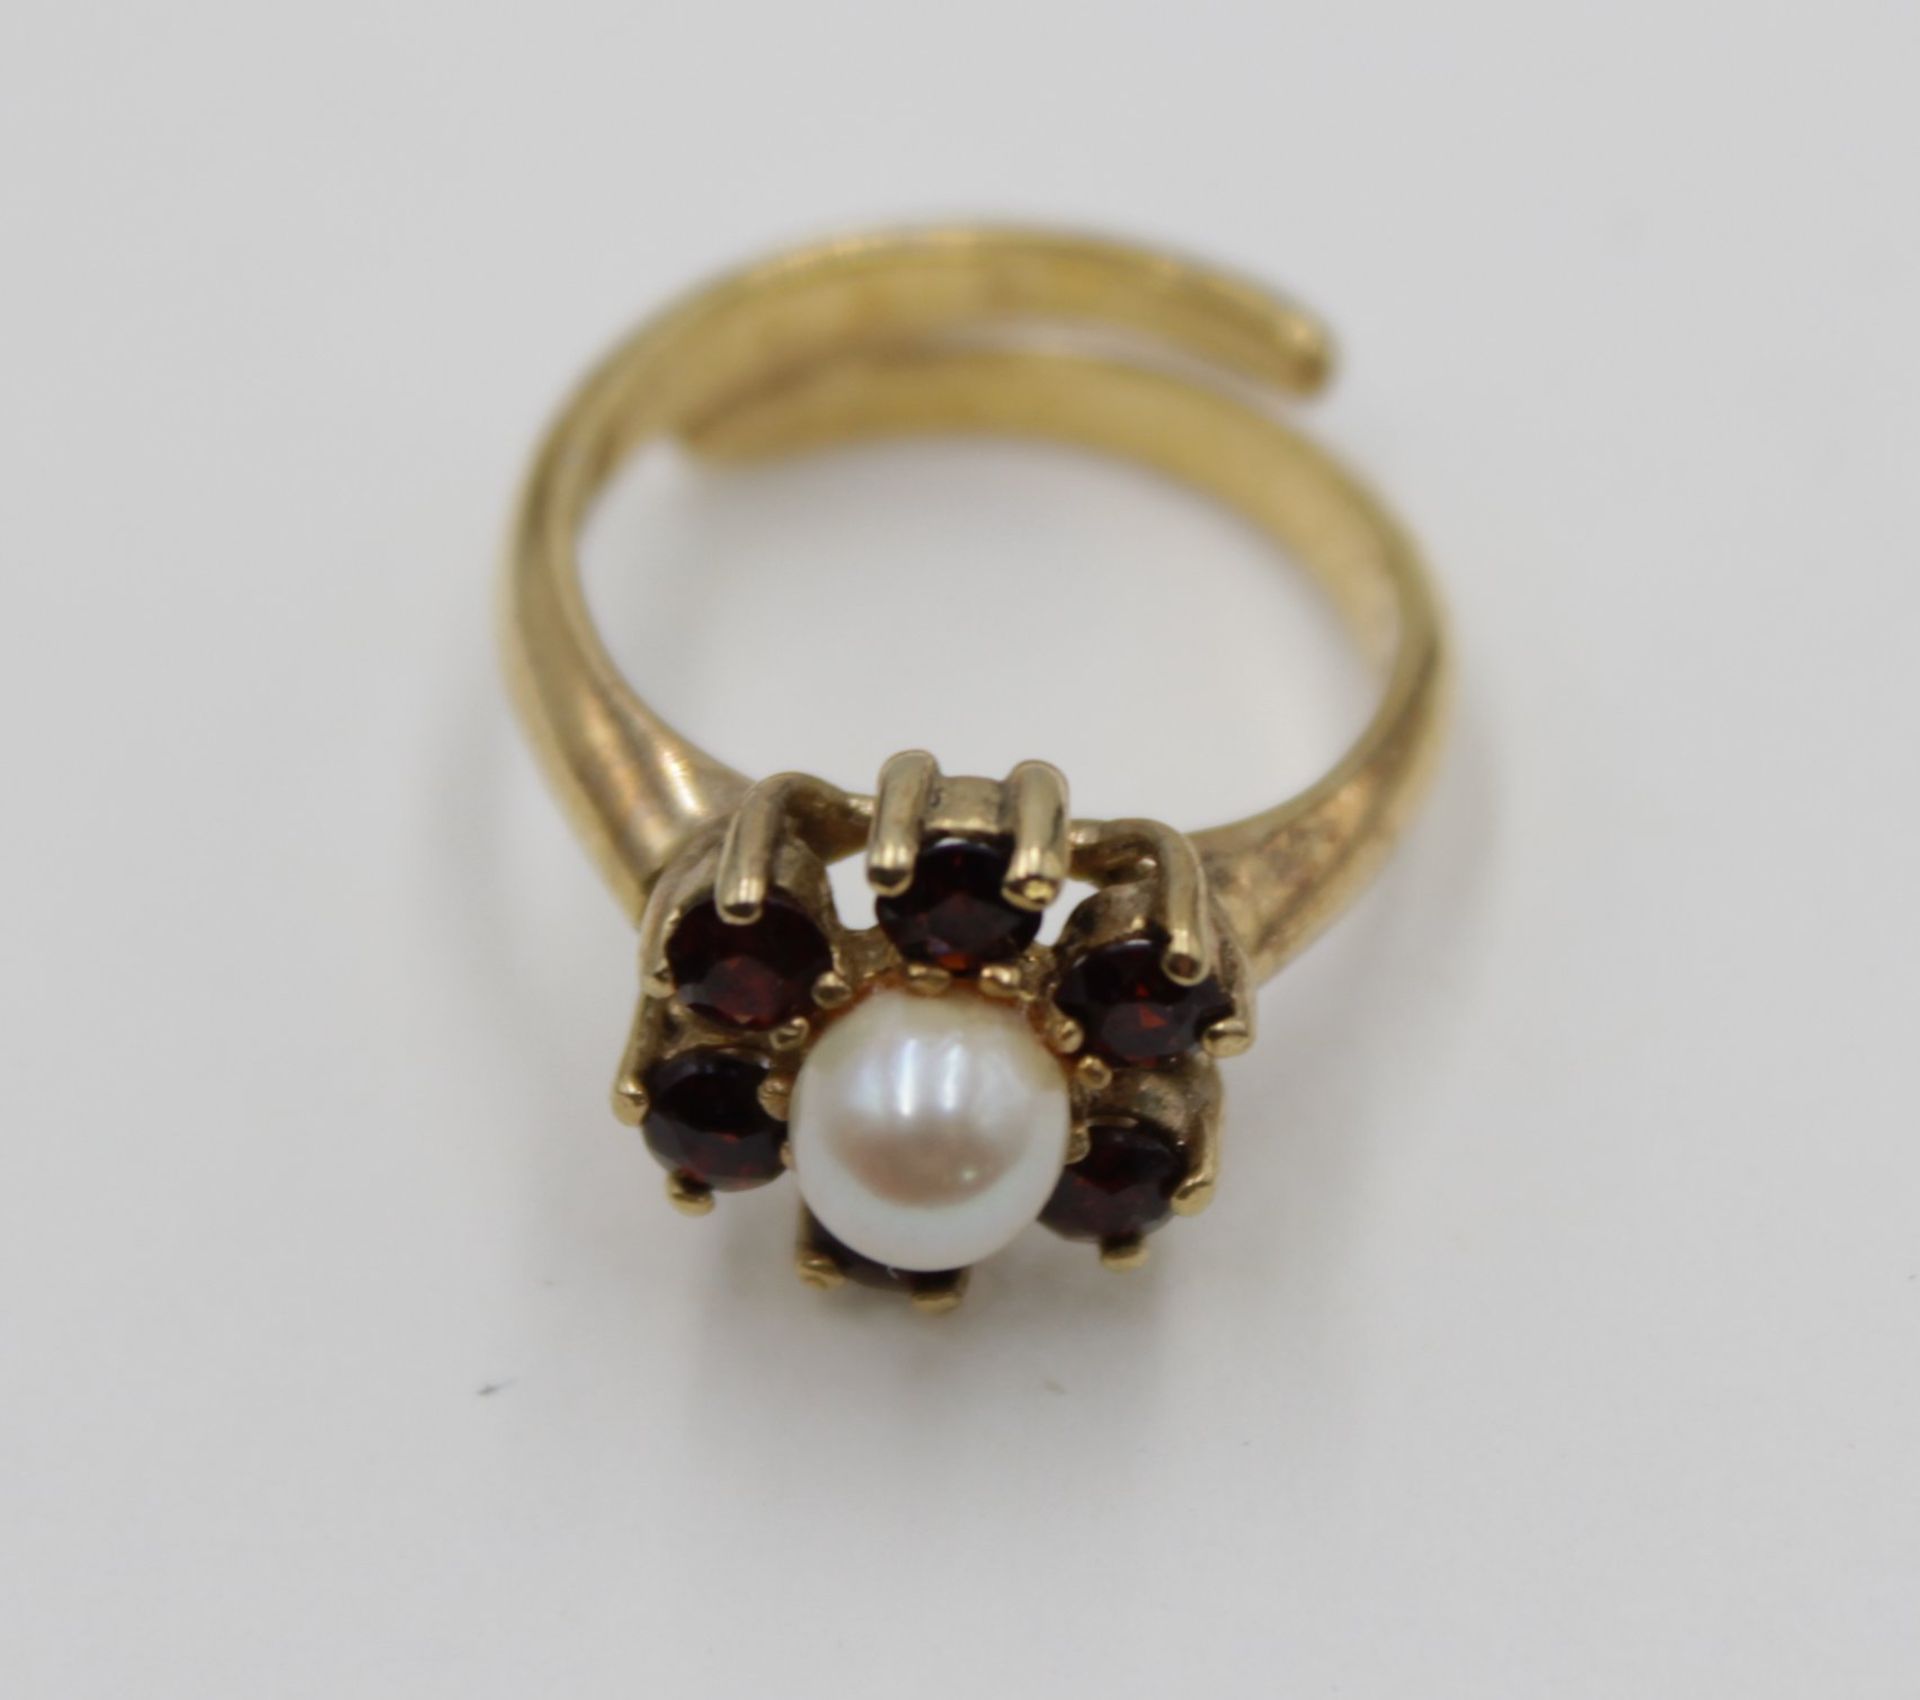 835er Silber-Ring vergoldet, Perle und Granat, 3,7gr., offene Schiene - Bild 2 aus 5